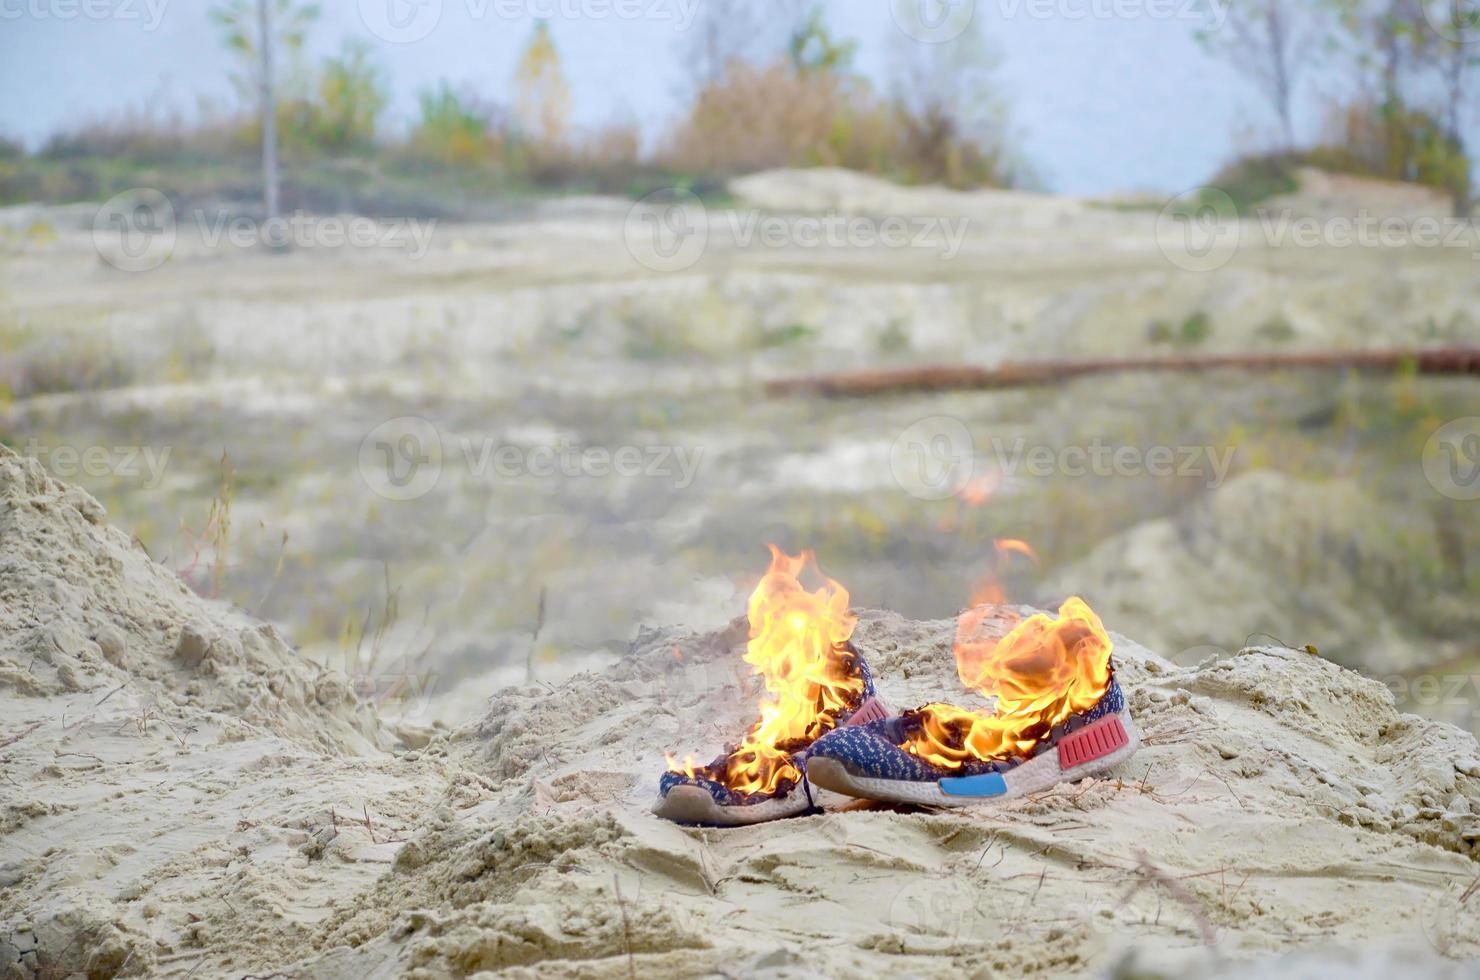 brennende sportschuhe oder turnschuhe in feuer stehen an der sandstrandküste. Sportler ausgebrannt. körperliche anstrengung während des trainingskonzepts foto